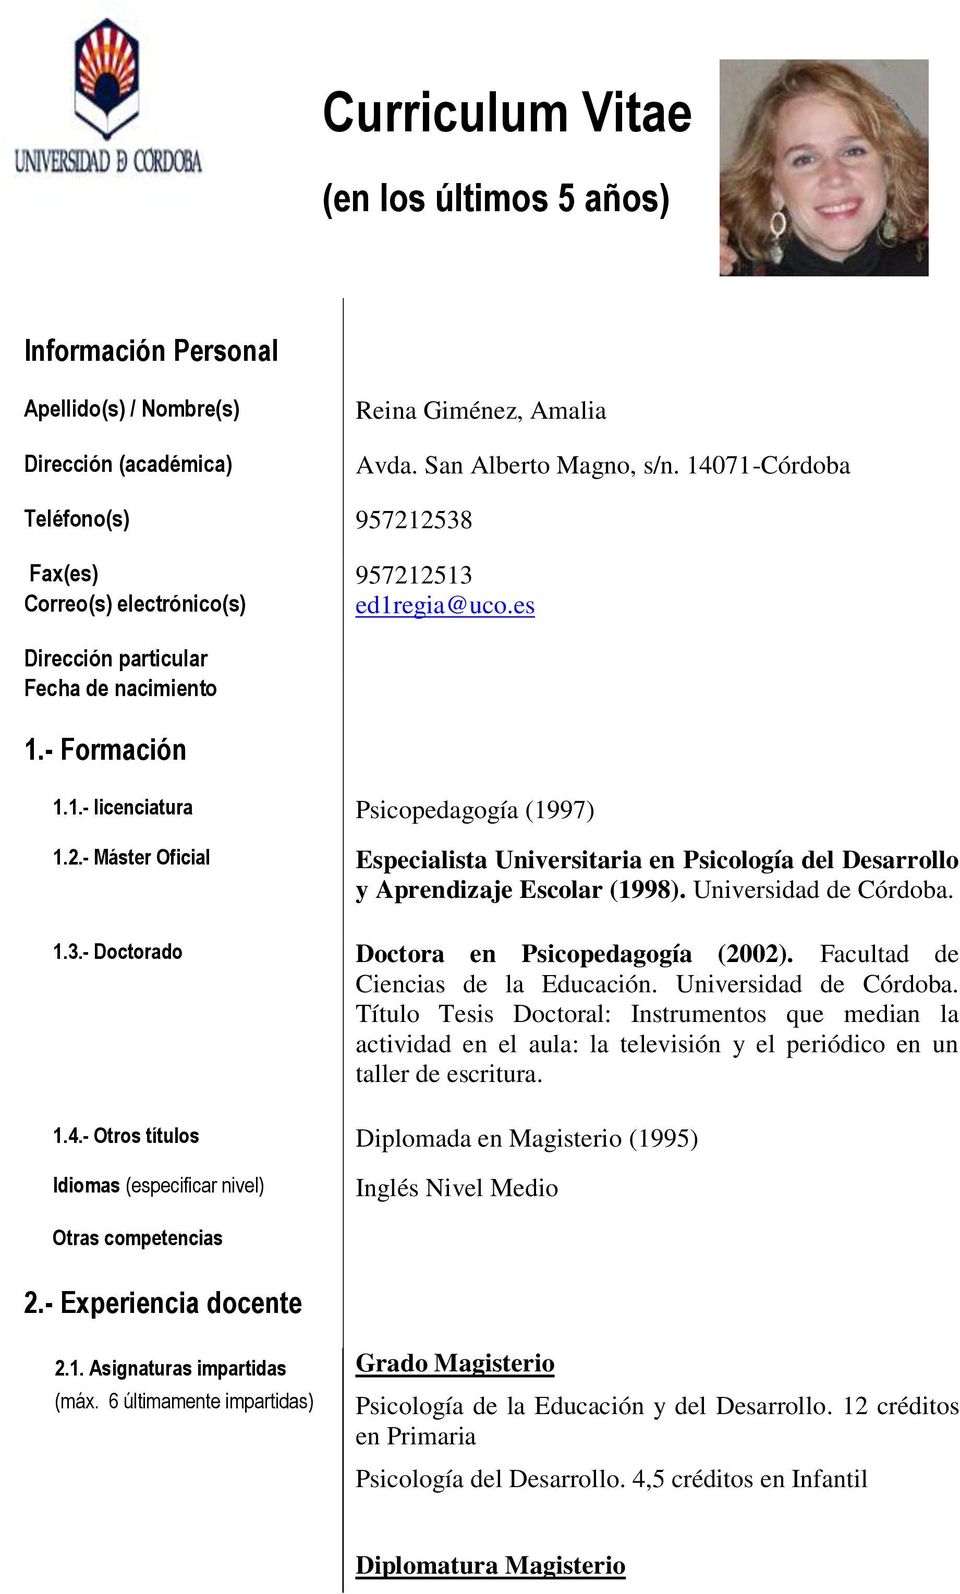 Universidad de Córdoba. 1.3.- Doctorado Doctora en Psicopedagogía (2002). Facultad de Ciencias de la Educación. Universidad de Córdoba.